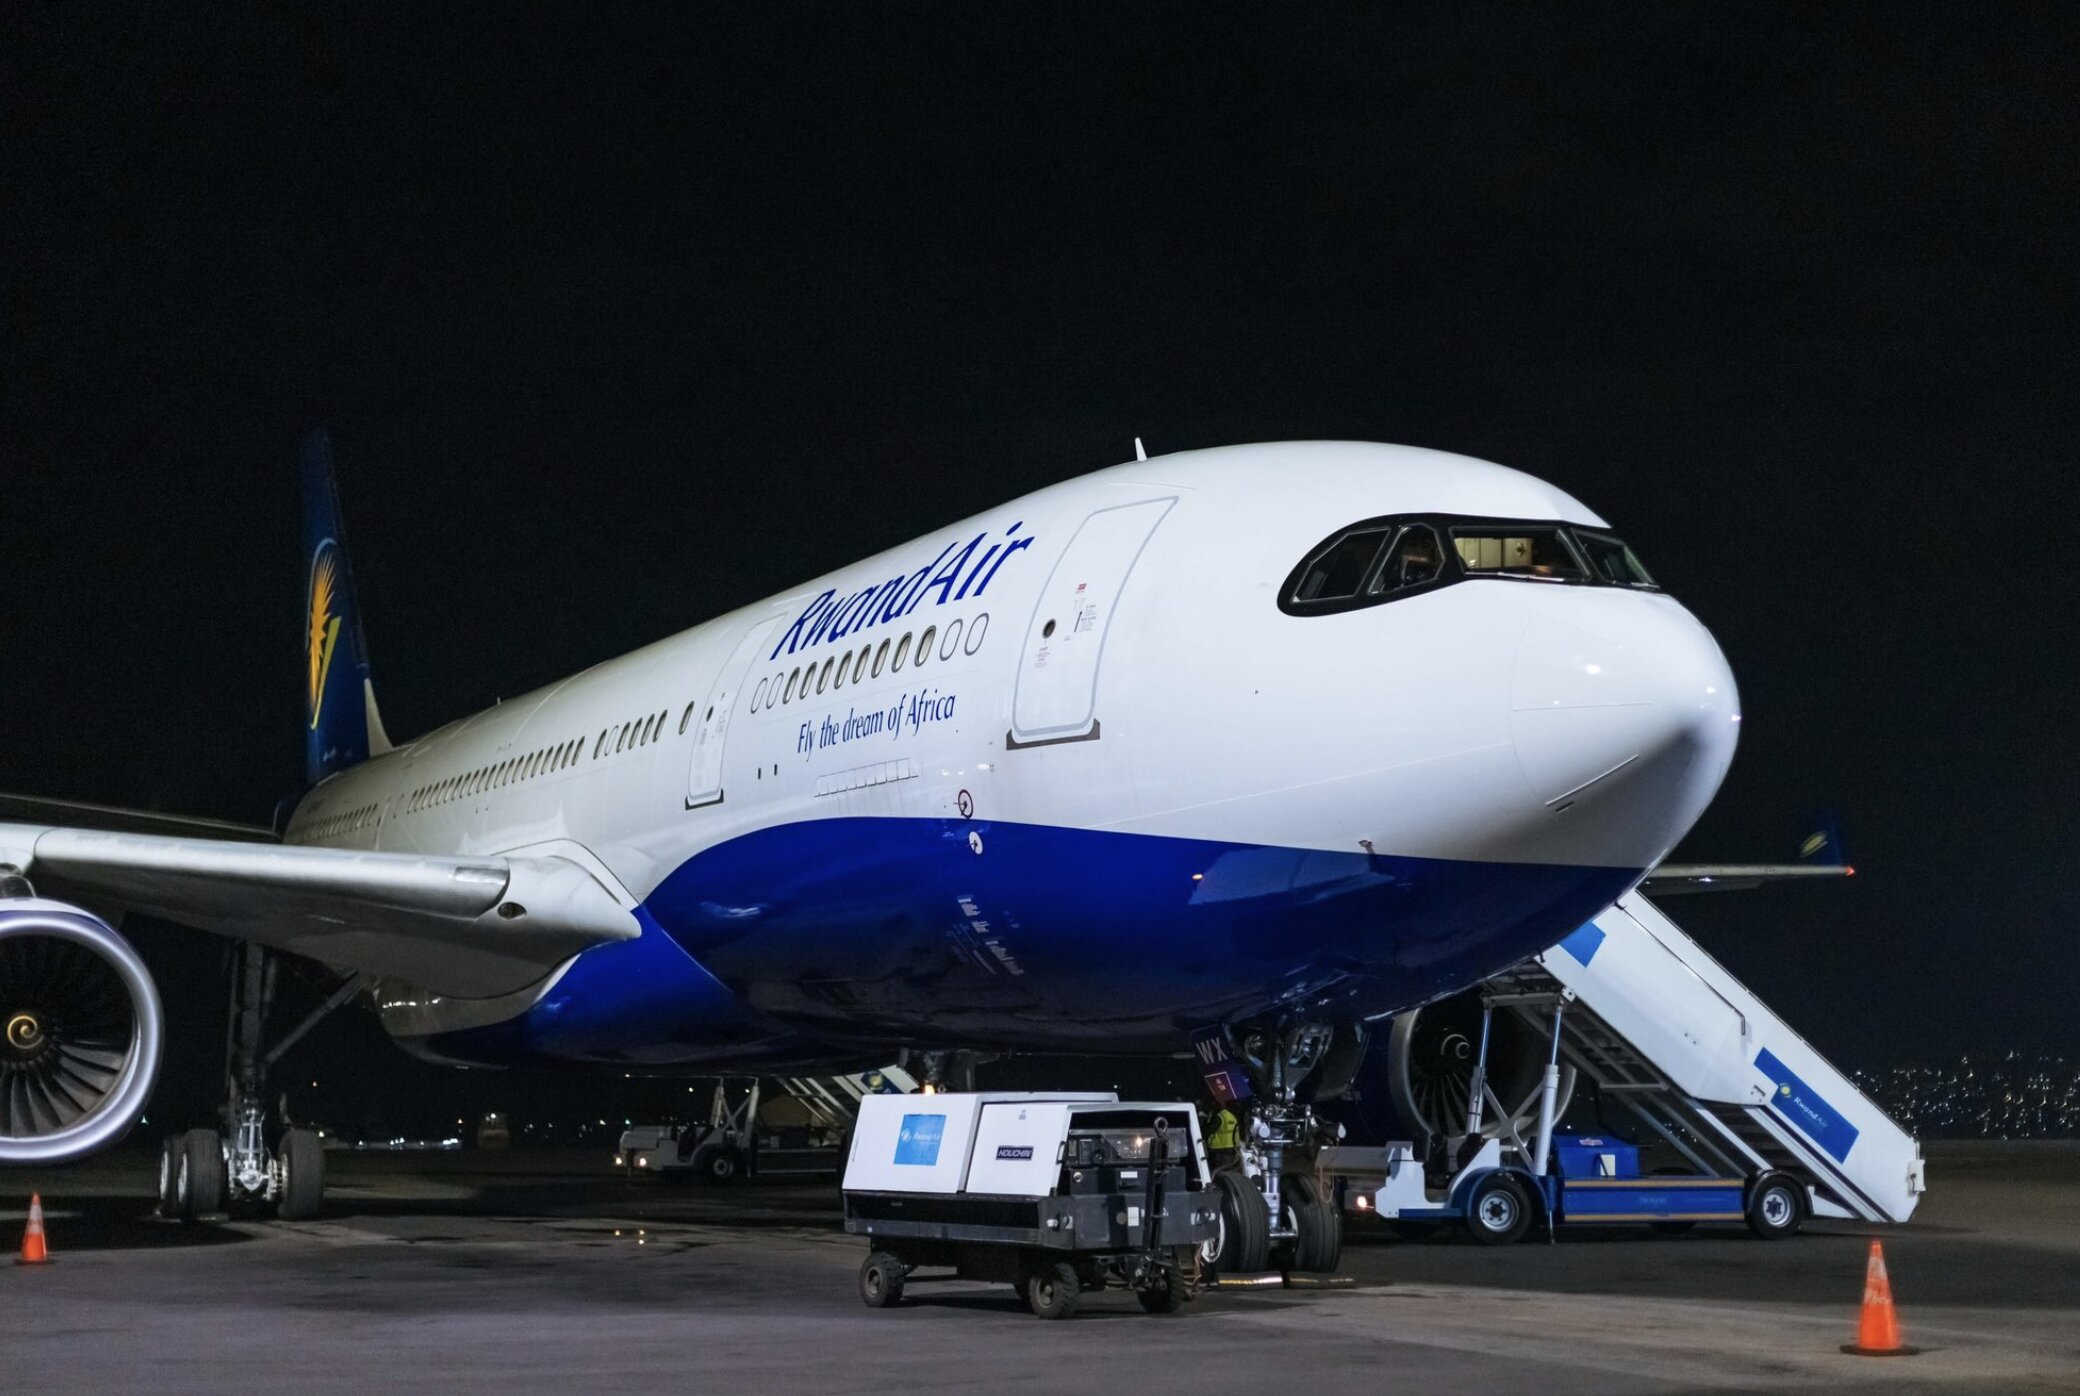 طيران رواند أحدث شركة طيران في أفريقيا توقع ميثاق قيادة السلامة التابع للاتحاد الدولي للنقل الجوي، مع إعطاء الأولوية لثقافة السلامة